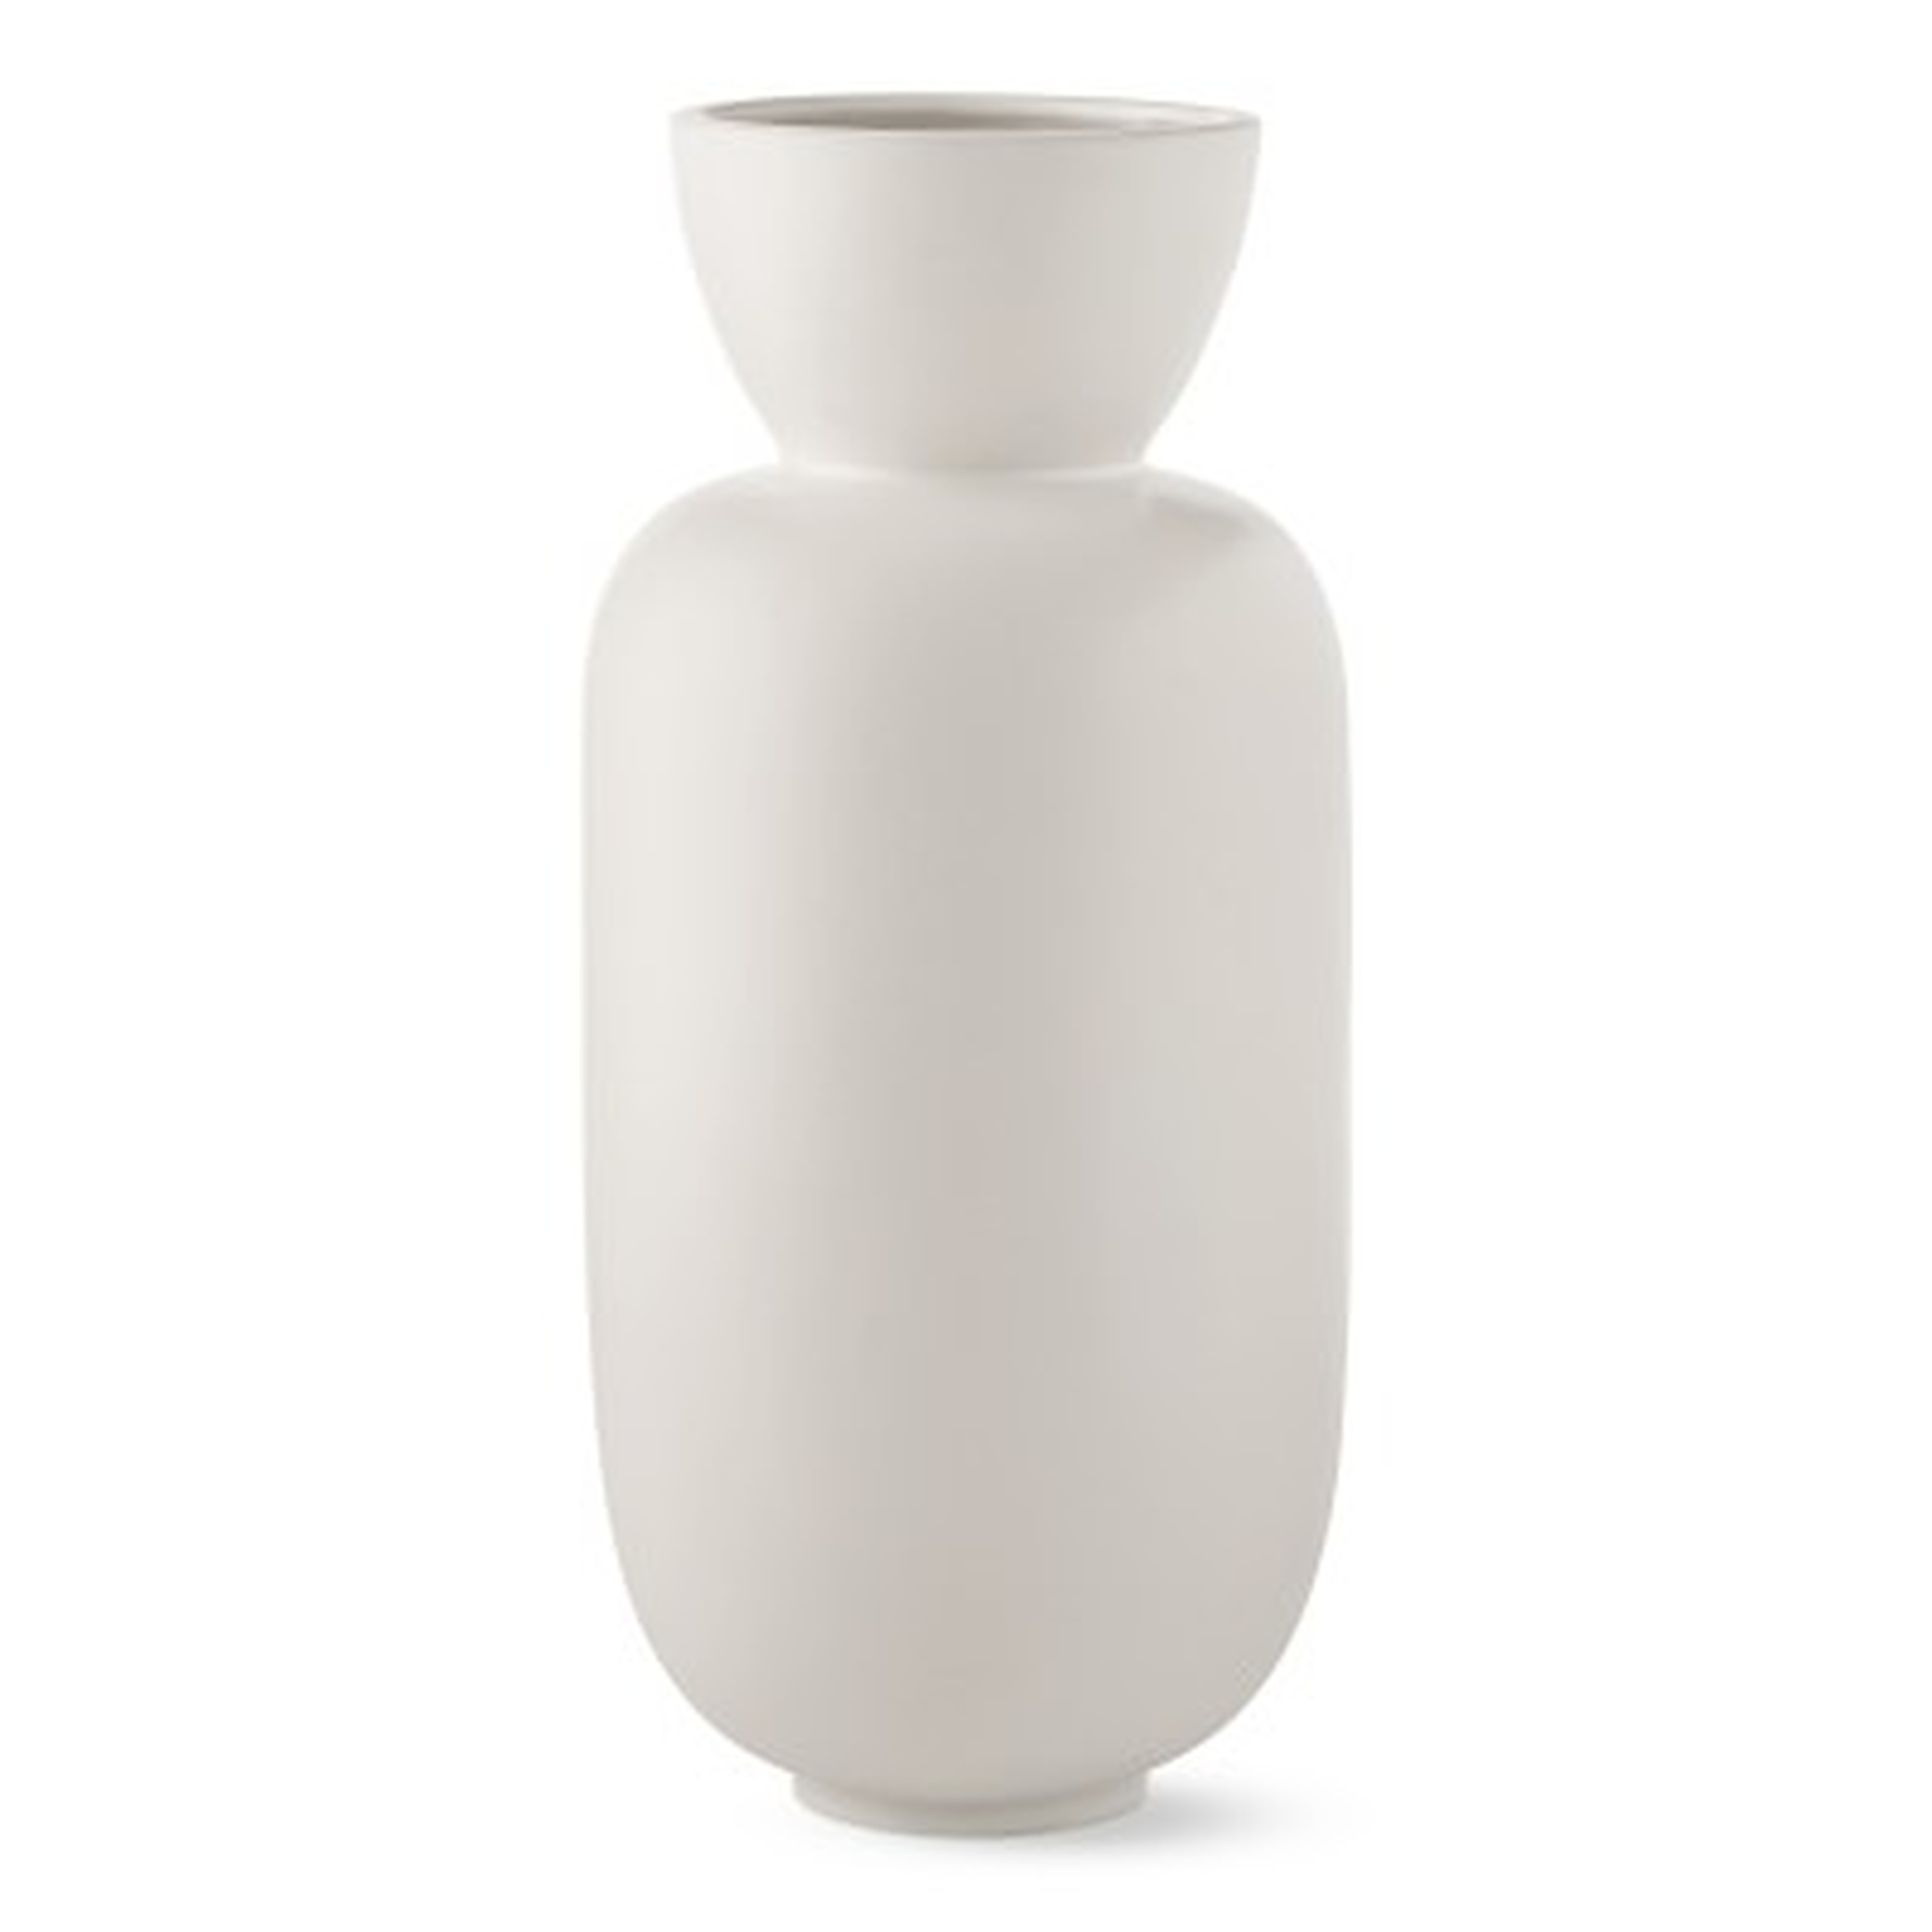 Larsen White Ceramic Vase, Large - Williams Sonoma